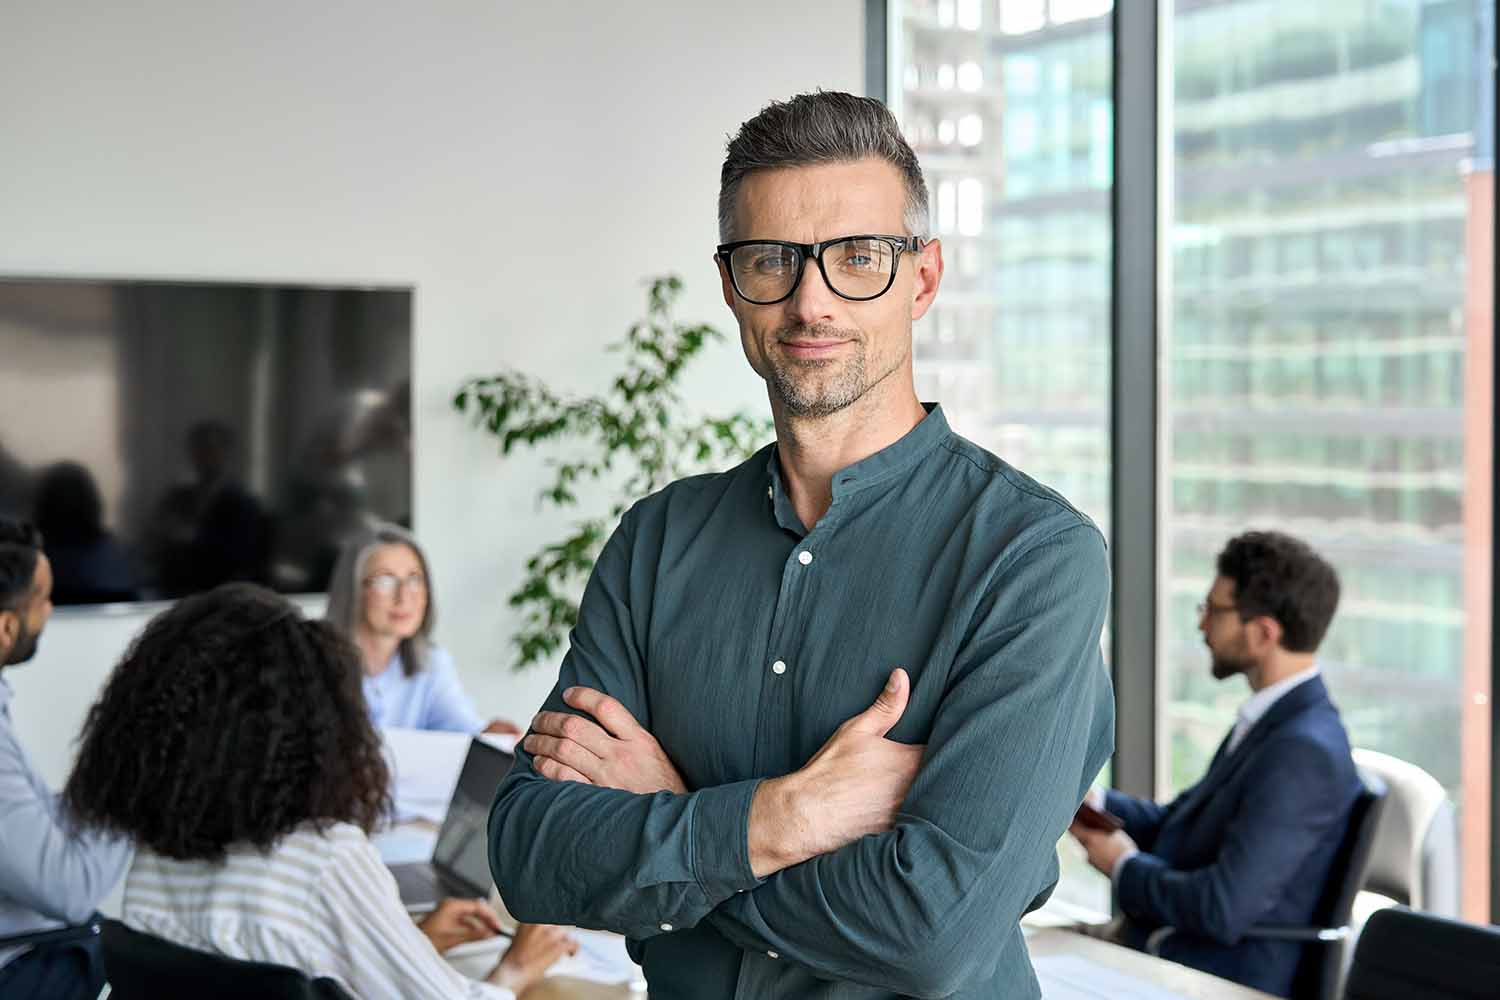 Исполнительный менеджер в очках позирует для делового портрета со сложенными руками